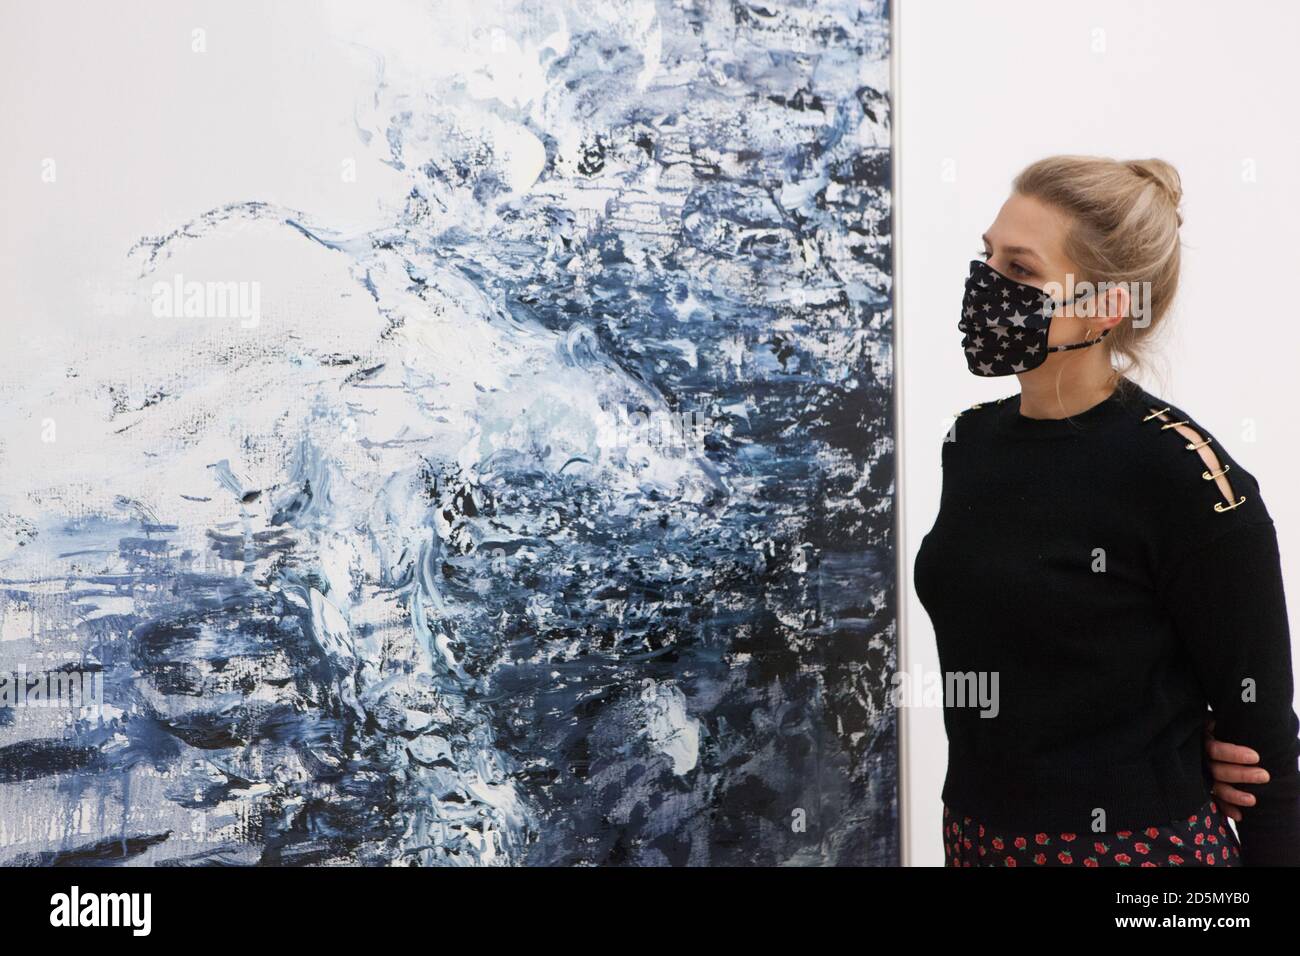 London, Großbritannien, 14. Oktober 2020: Die Künstlerin Maggi Hambling eröffnet in der Marlborough Gallery in Mayfair eine Gemäldeausstellung zu ihrem 75. Geburtstag. Neben einer Serie von Selbstporträts sind ihre Umweltbelange mit Bildern gefährdeter Tiere vertreten. Rachel Royse/Alamy Live News Stockfoto